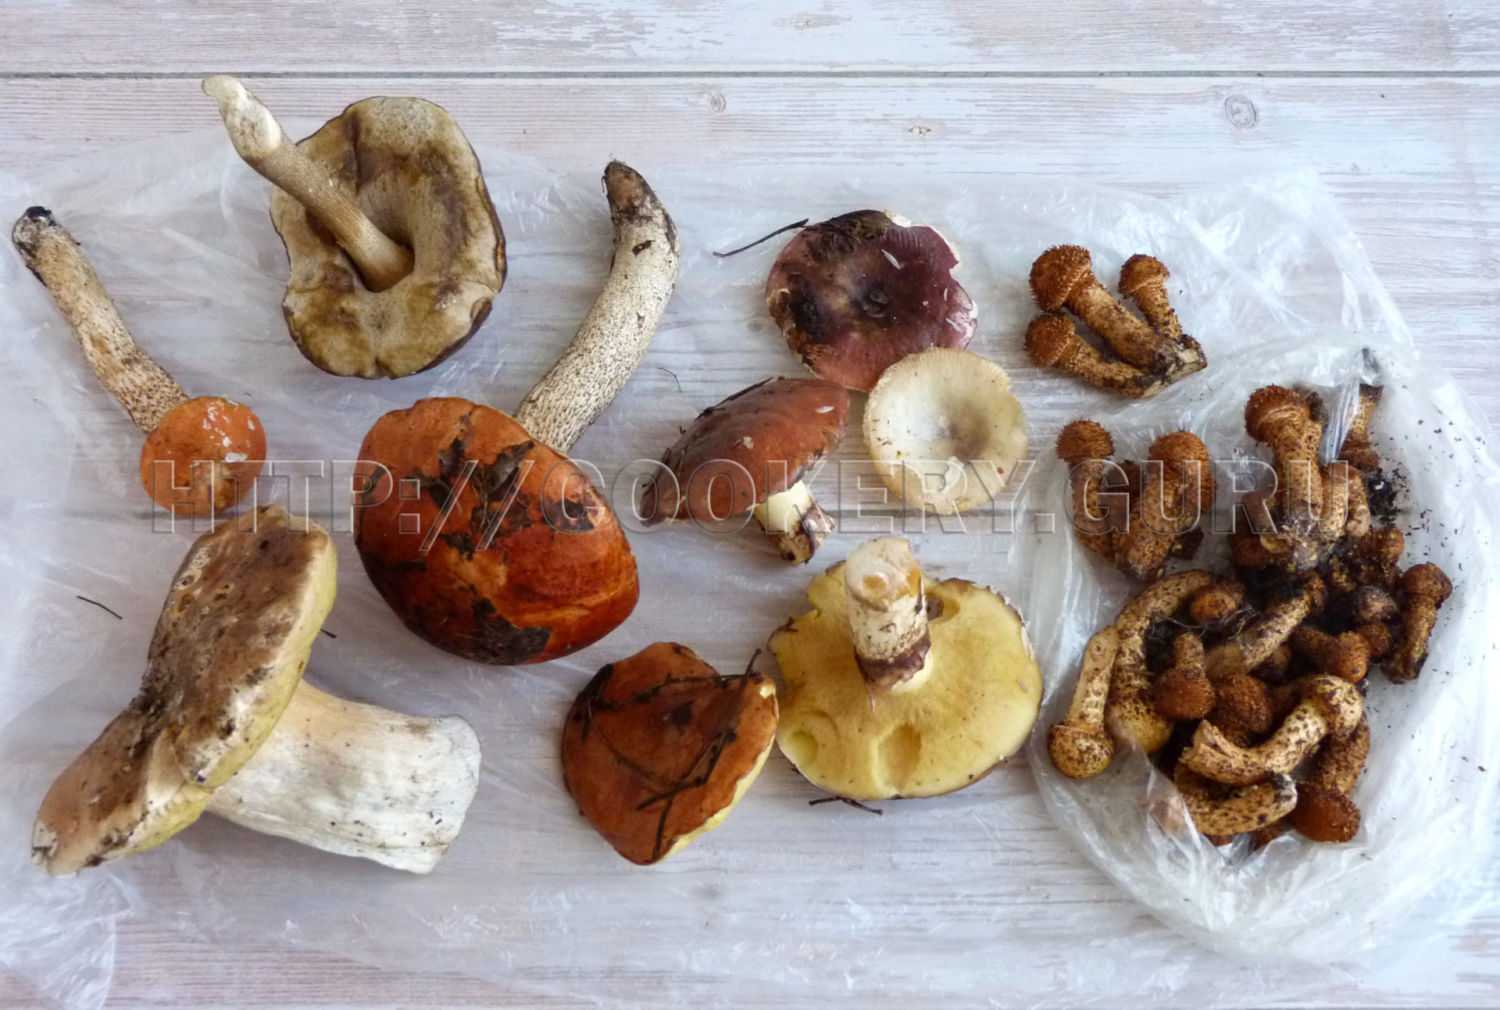 Как приготовить гриб зонтик: обработка, нужно ли варить, пошаговые рецепты с фото